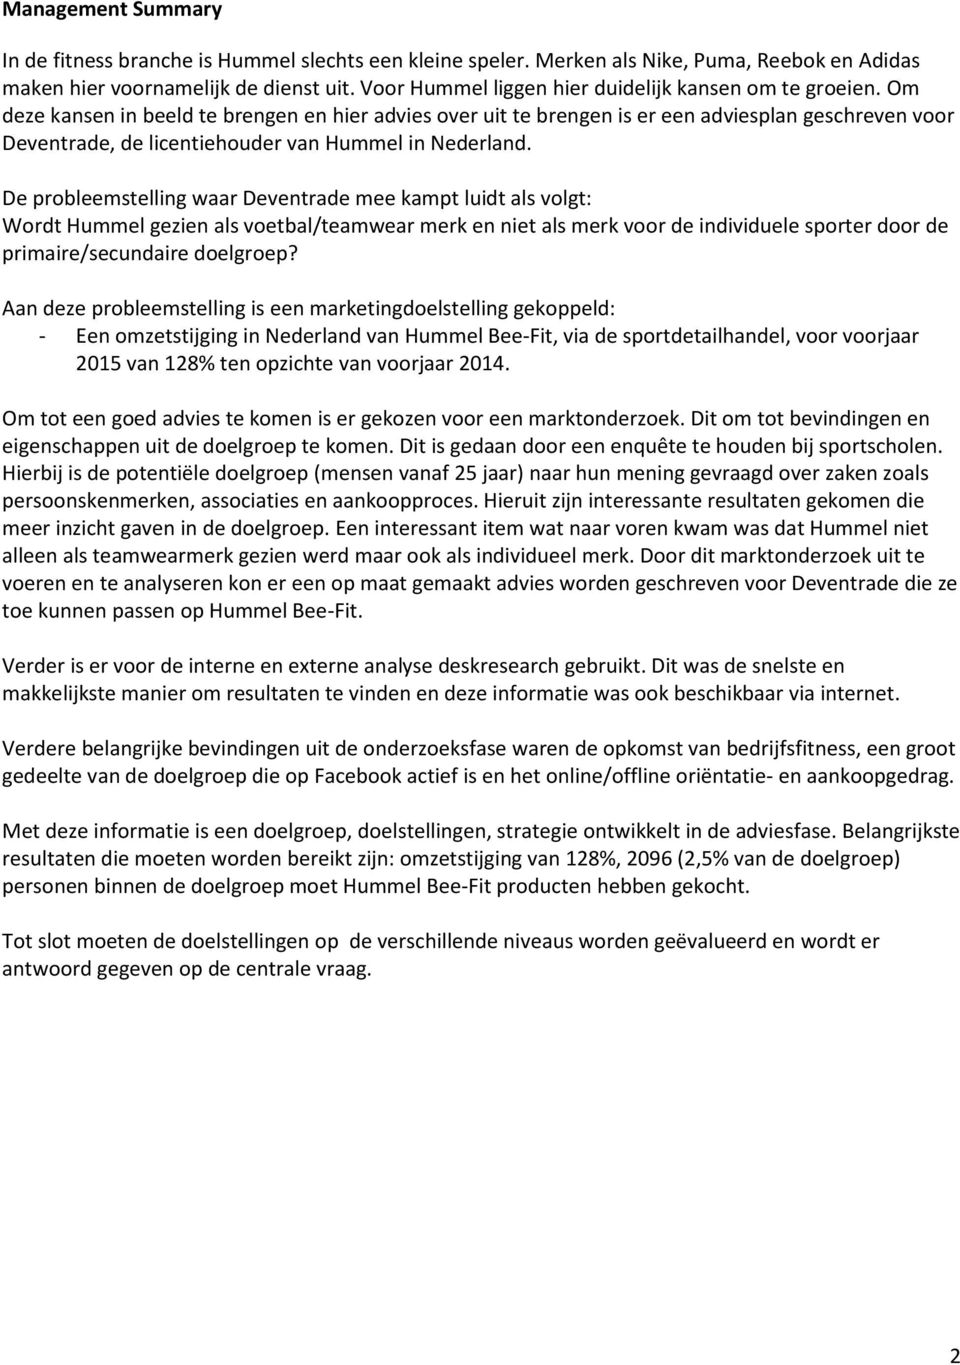 Om deze kansen in beeld te brengen en hier advies over uit te brengen is er een adviesplan geschreven voor Deventrade, de licentiehouder van Hummel in Nederland.